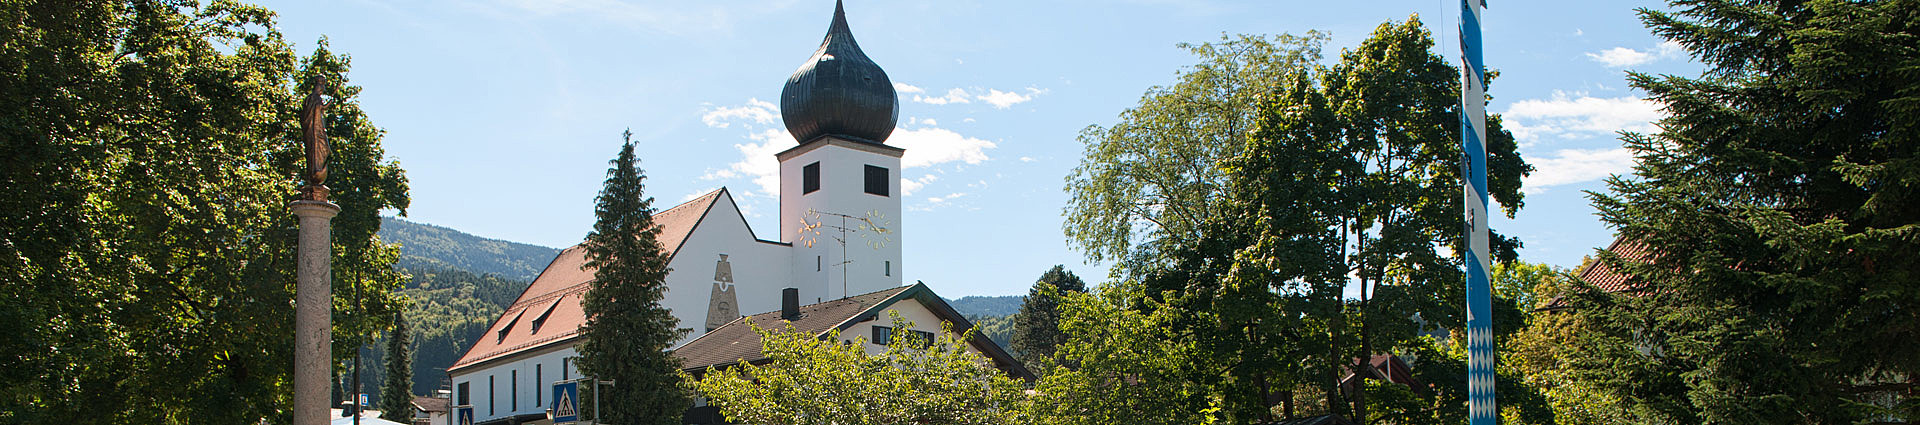 Hier finden Sie alle wichtigen Informationen für Ihren Urlaub in Bad Feilnbach